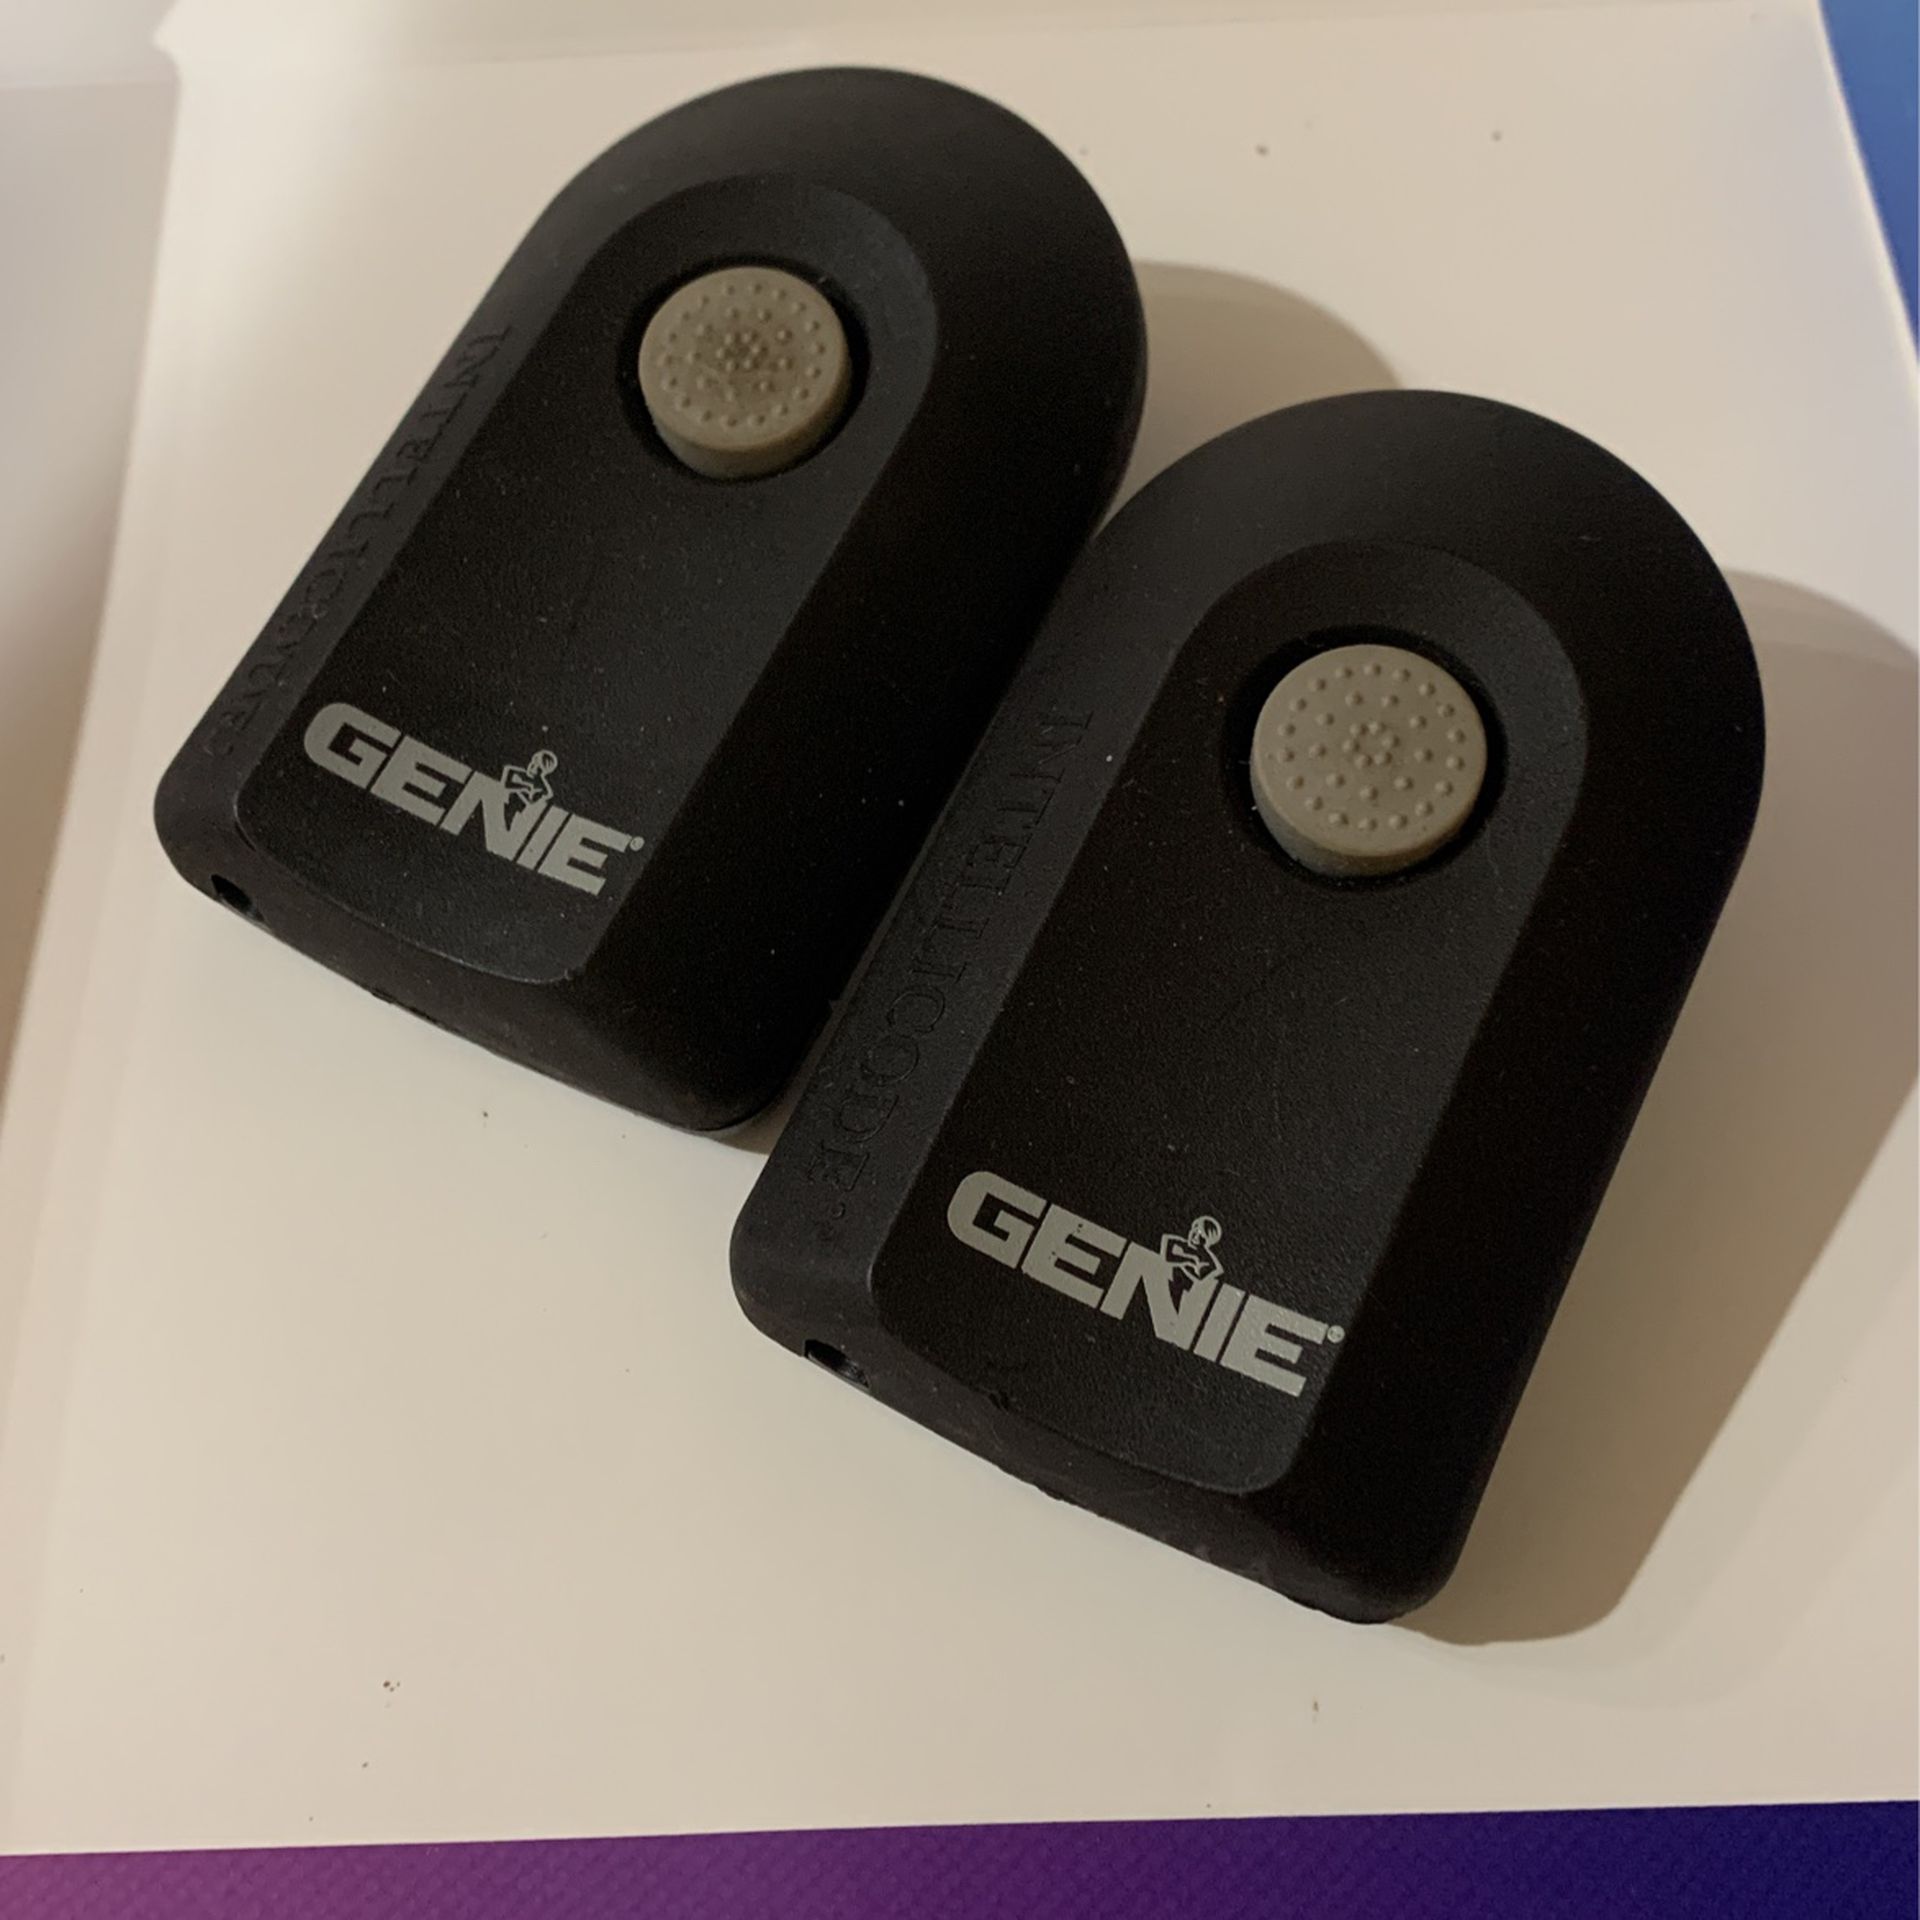 (2) Genie Intellicode Model ACSCTG Type 1 Garage Door Opener Remote Control